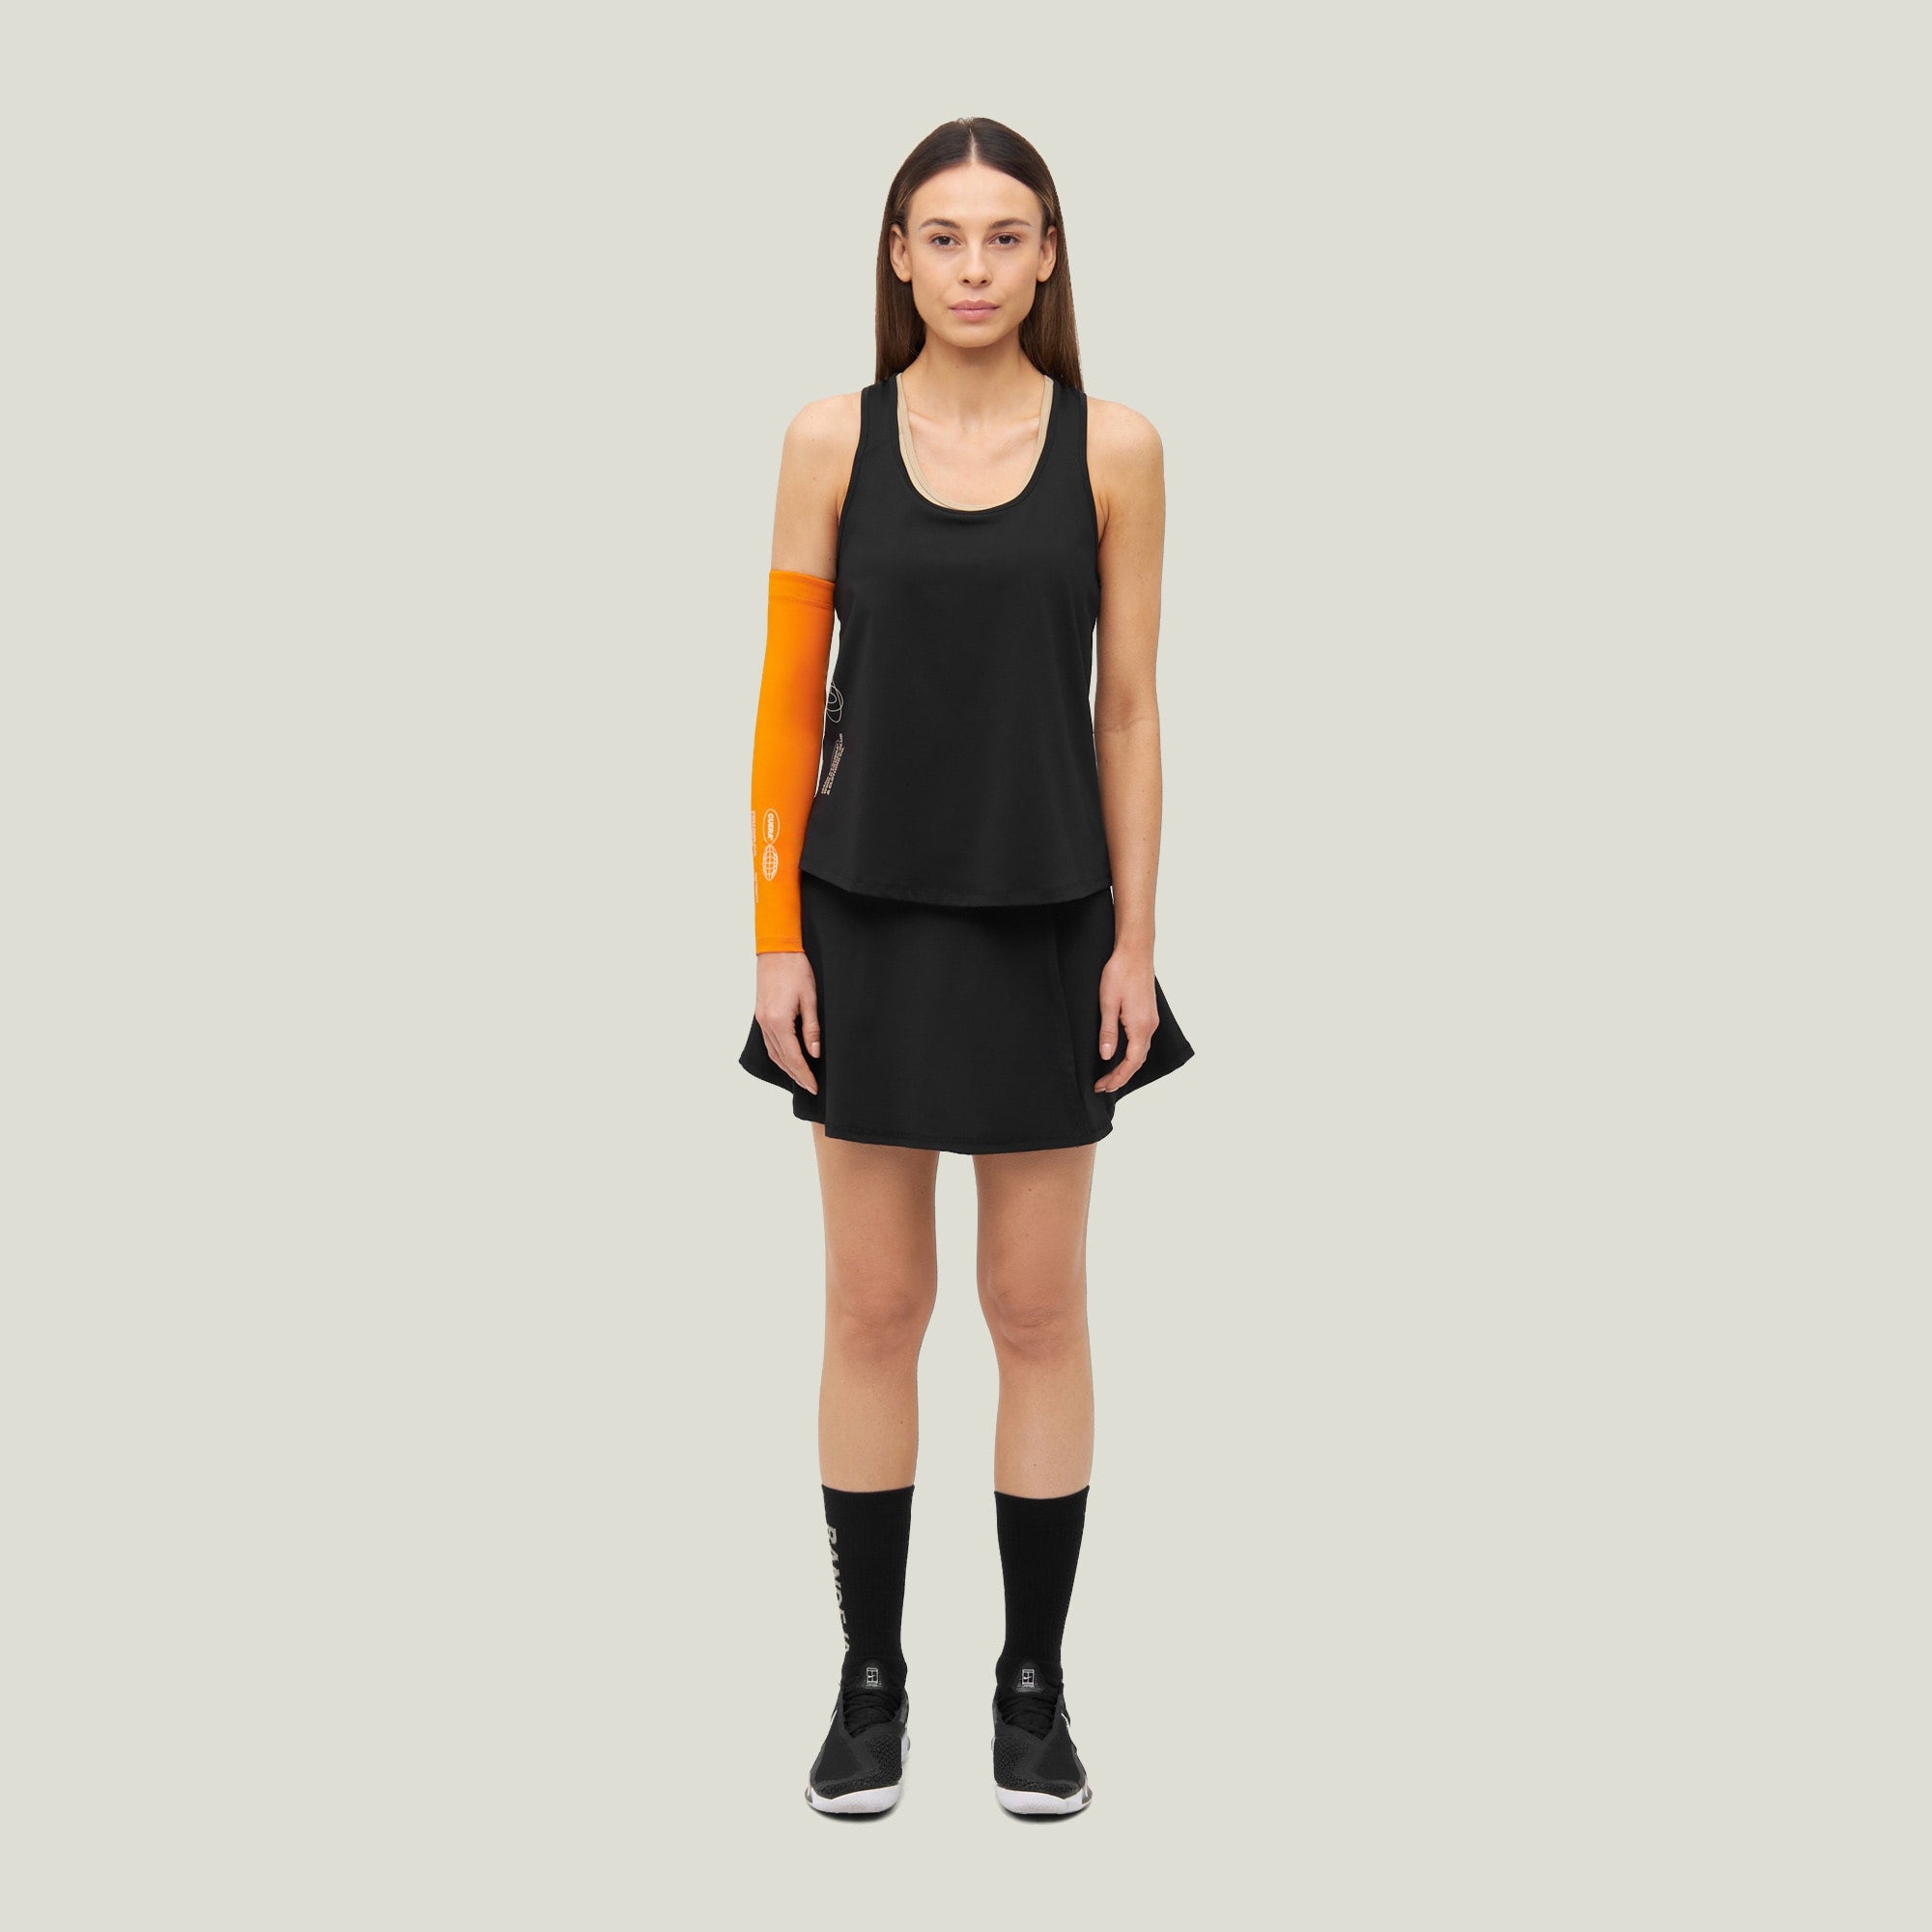 Oncourt Skirt 2-in-1 - Black